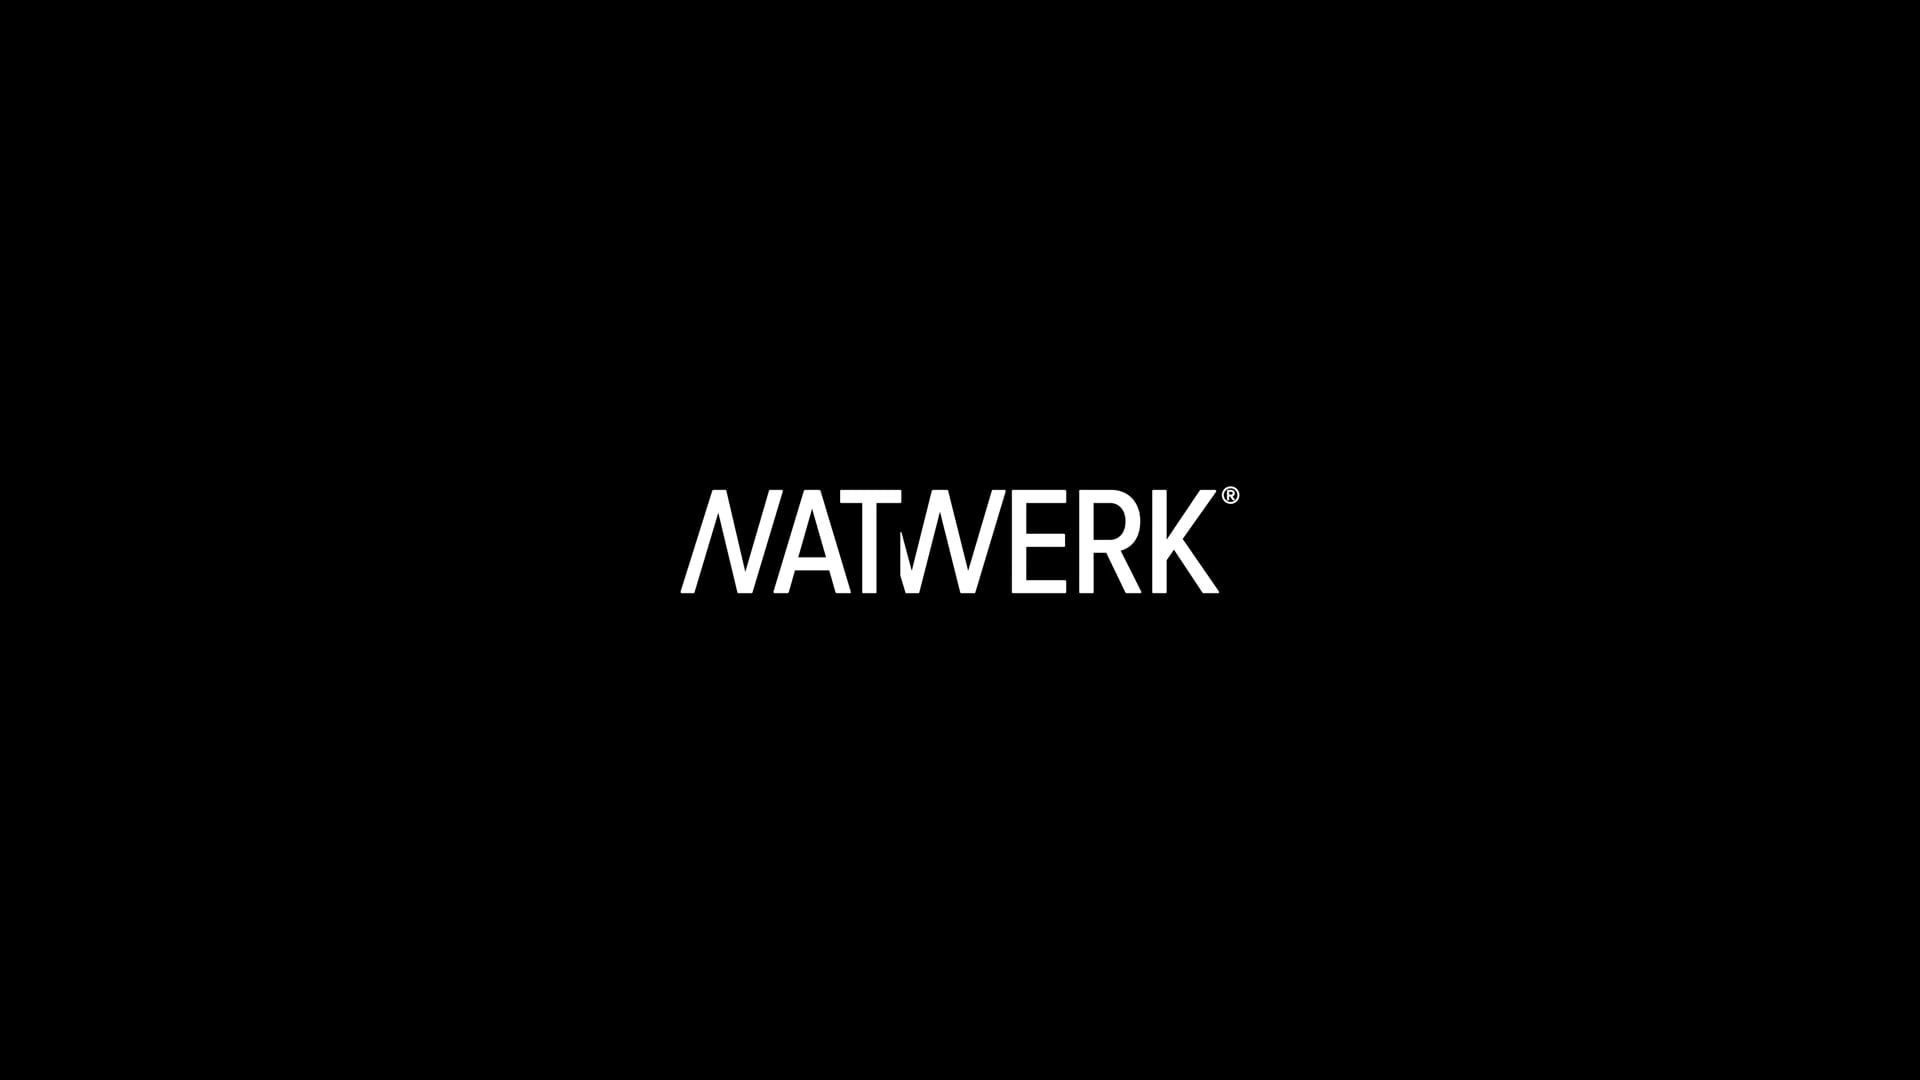 NATWERK_REEL